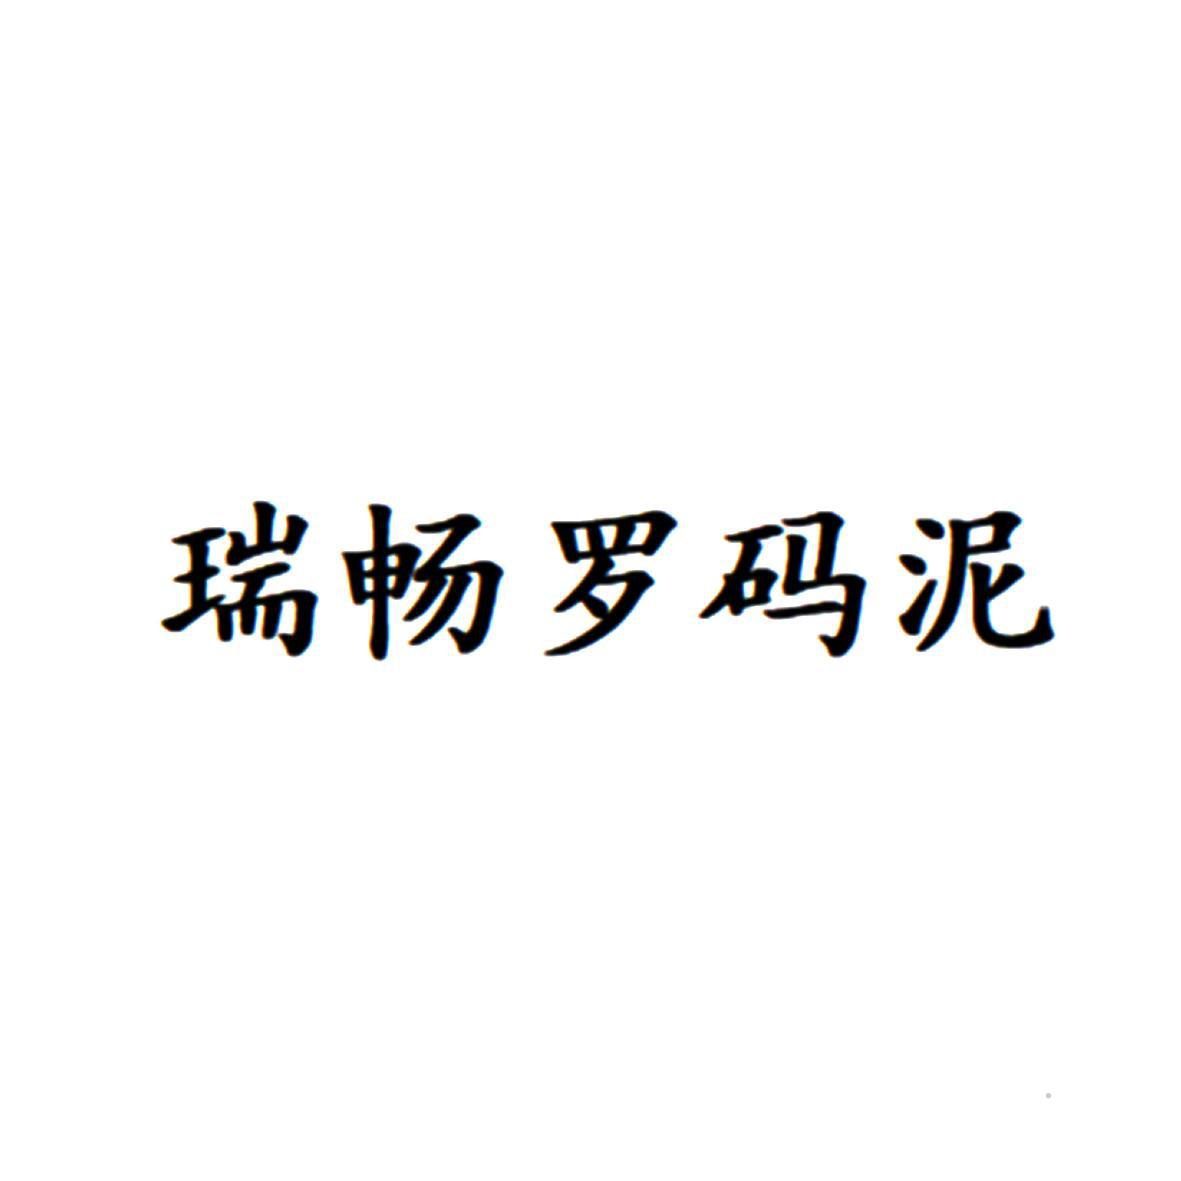 瑞畅罗码泥logo